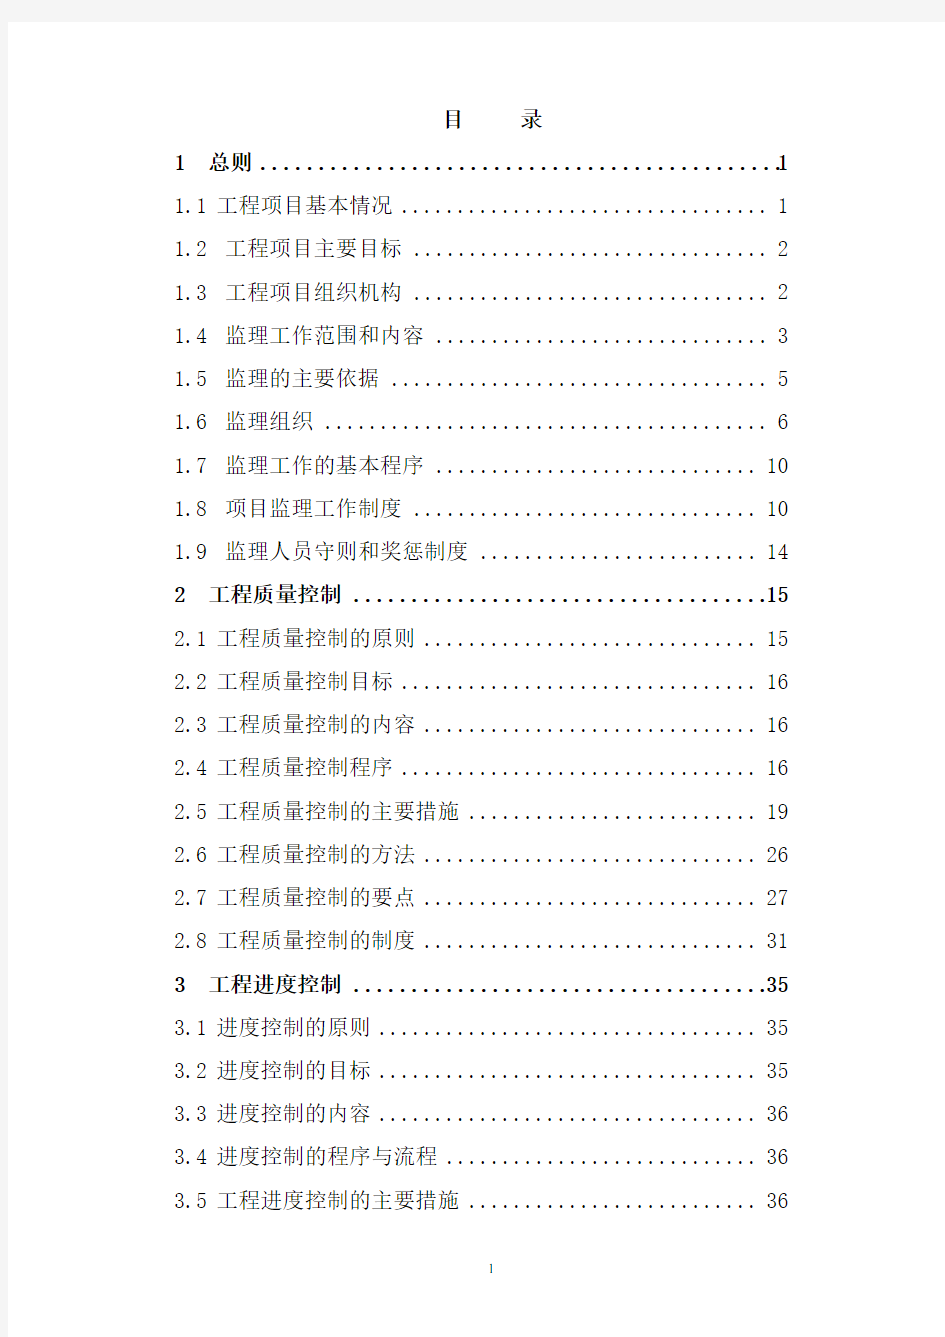 建宁县2013年度桐源小流域综合治理工程监理规划